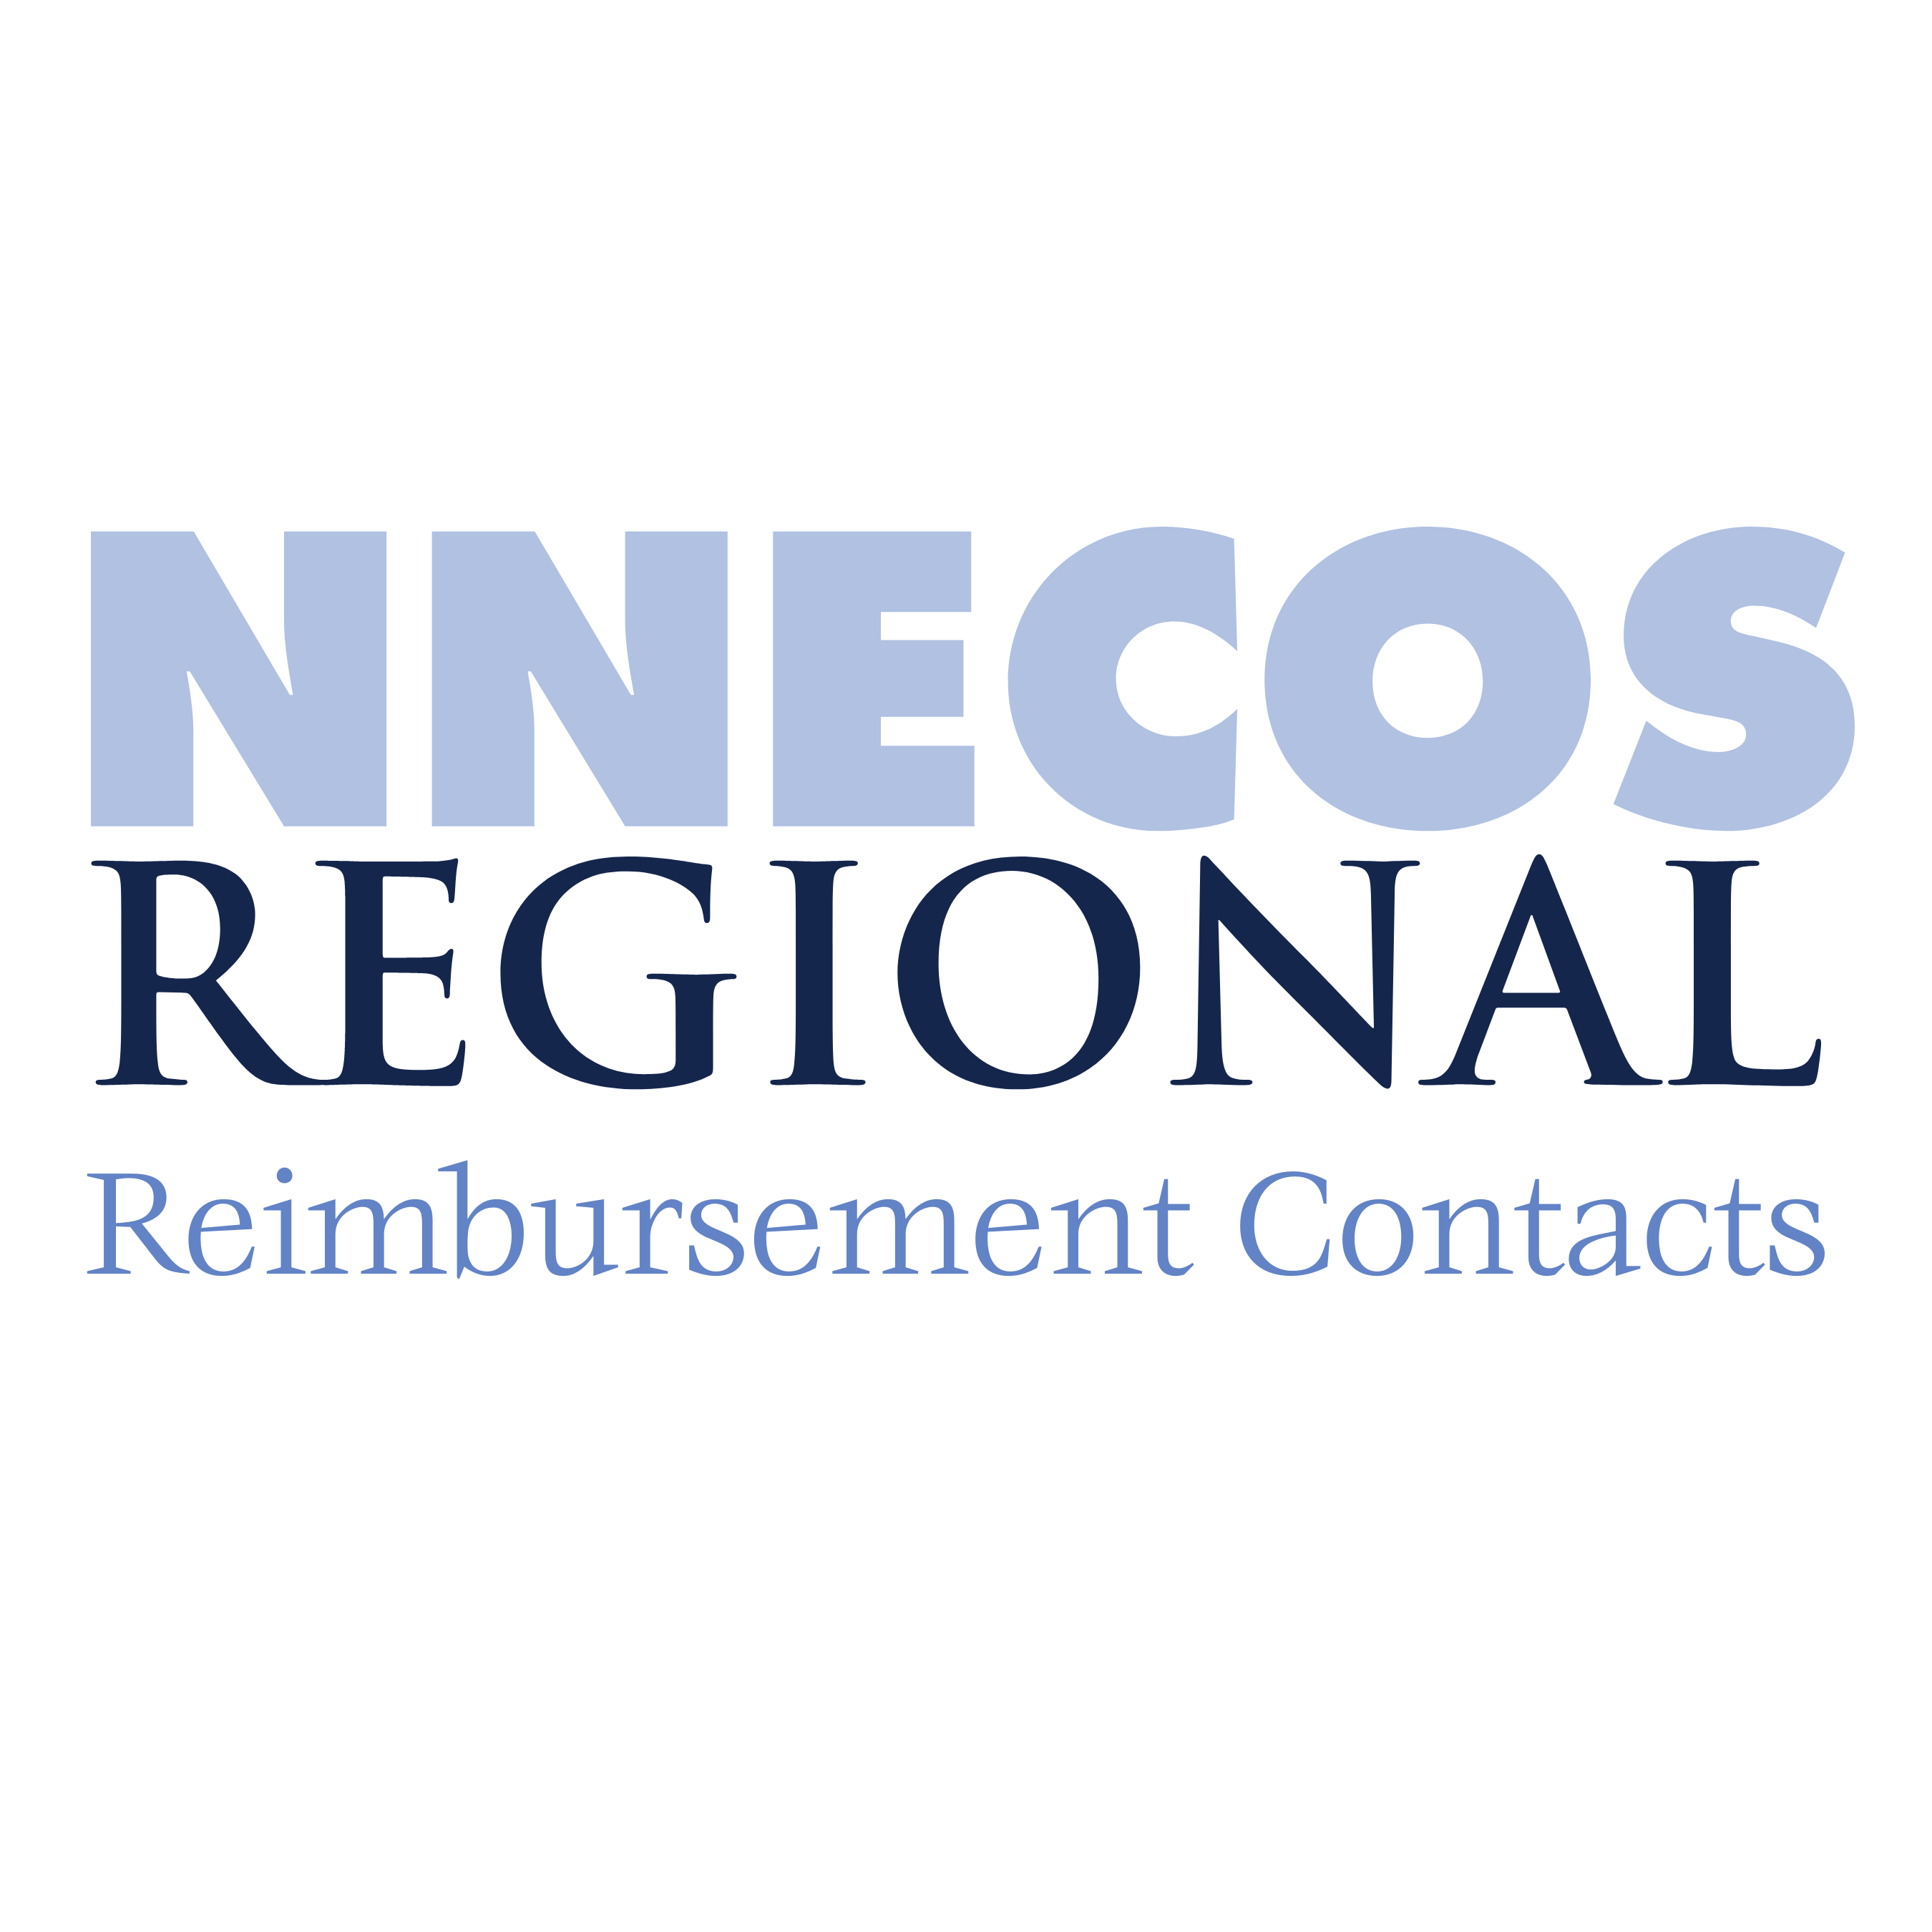 Regional Reimbursement Contacts